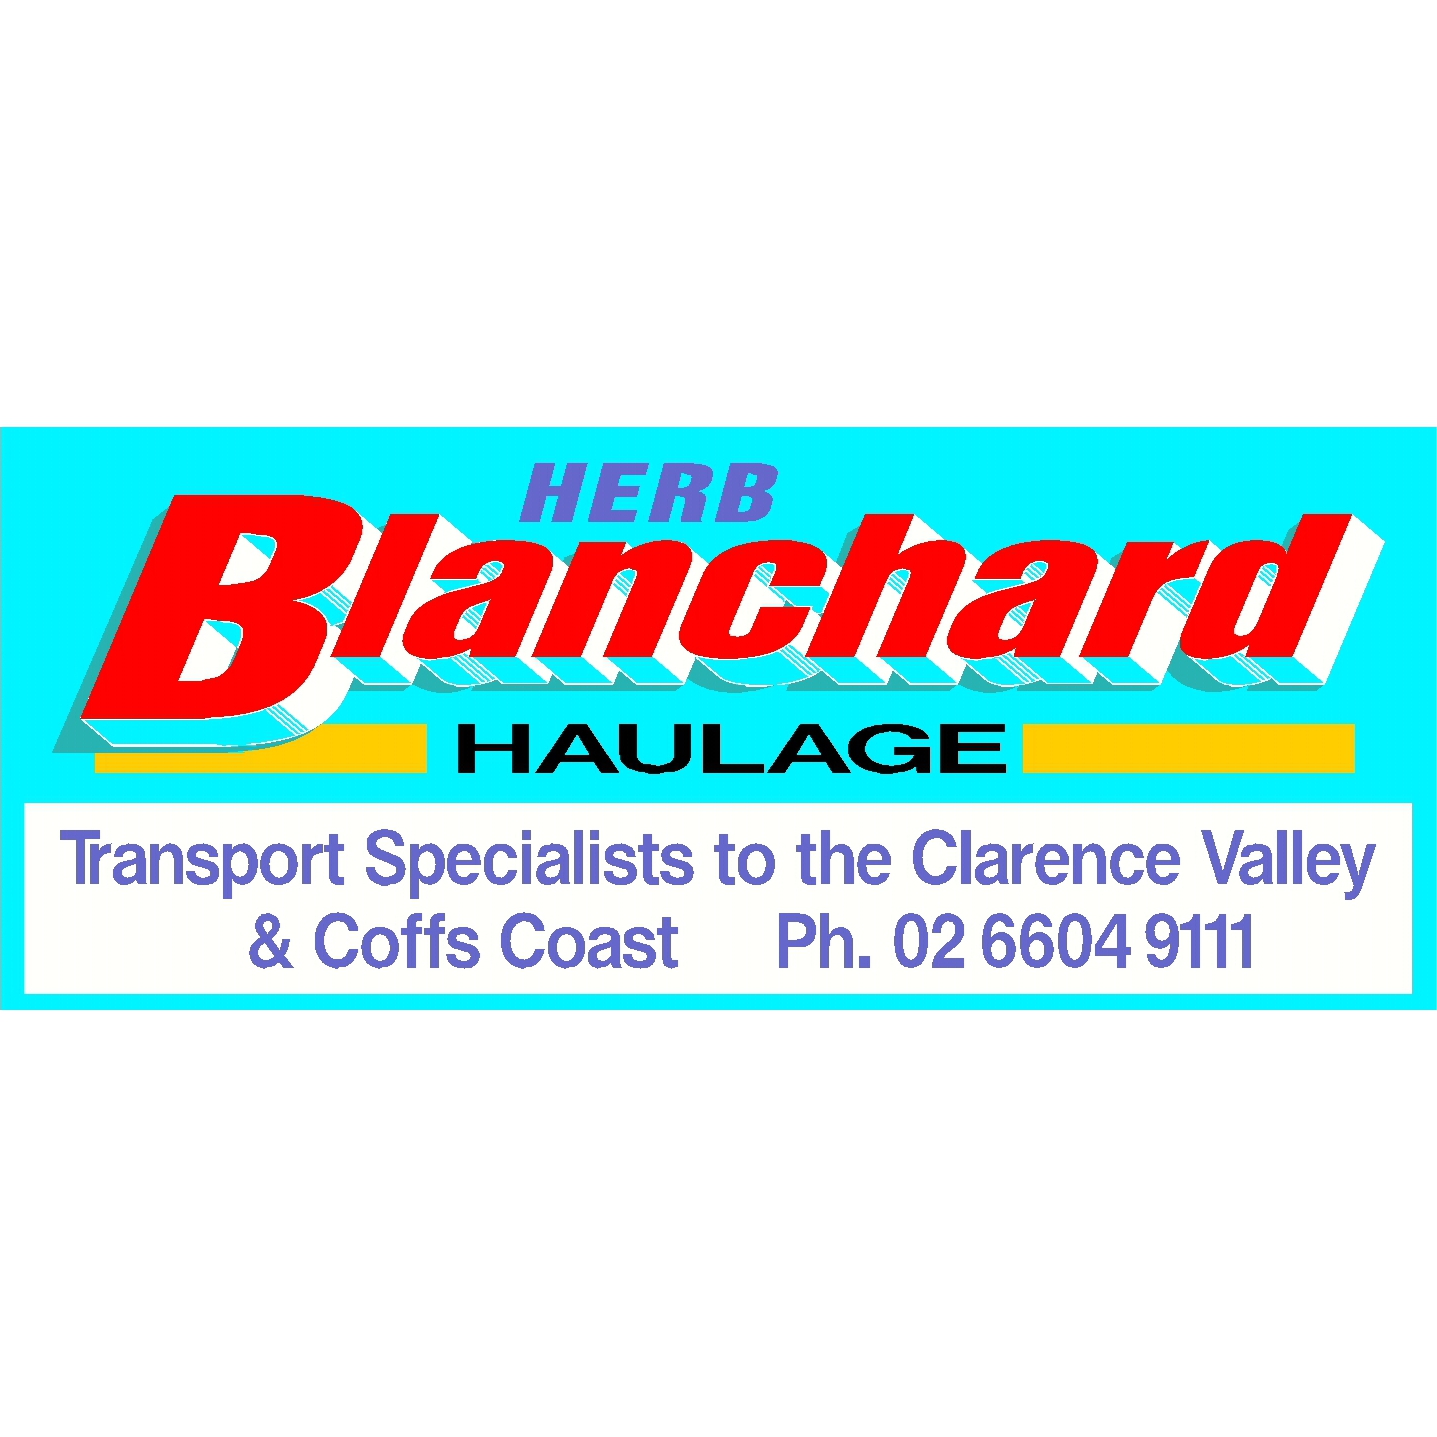 Blanchard, Herb Haulage Logo